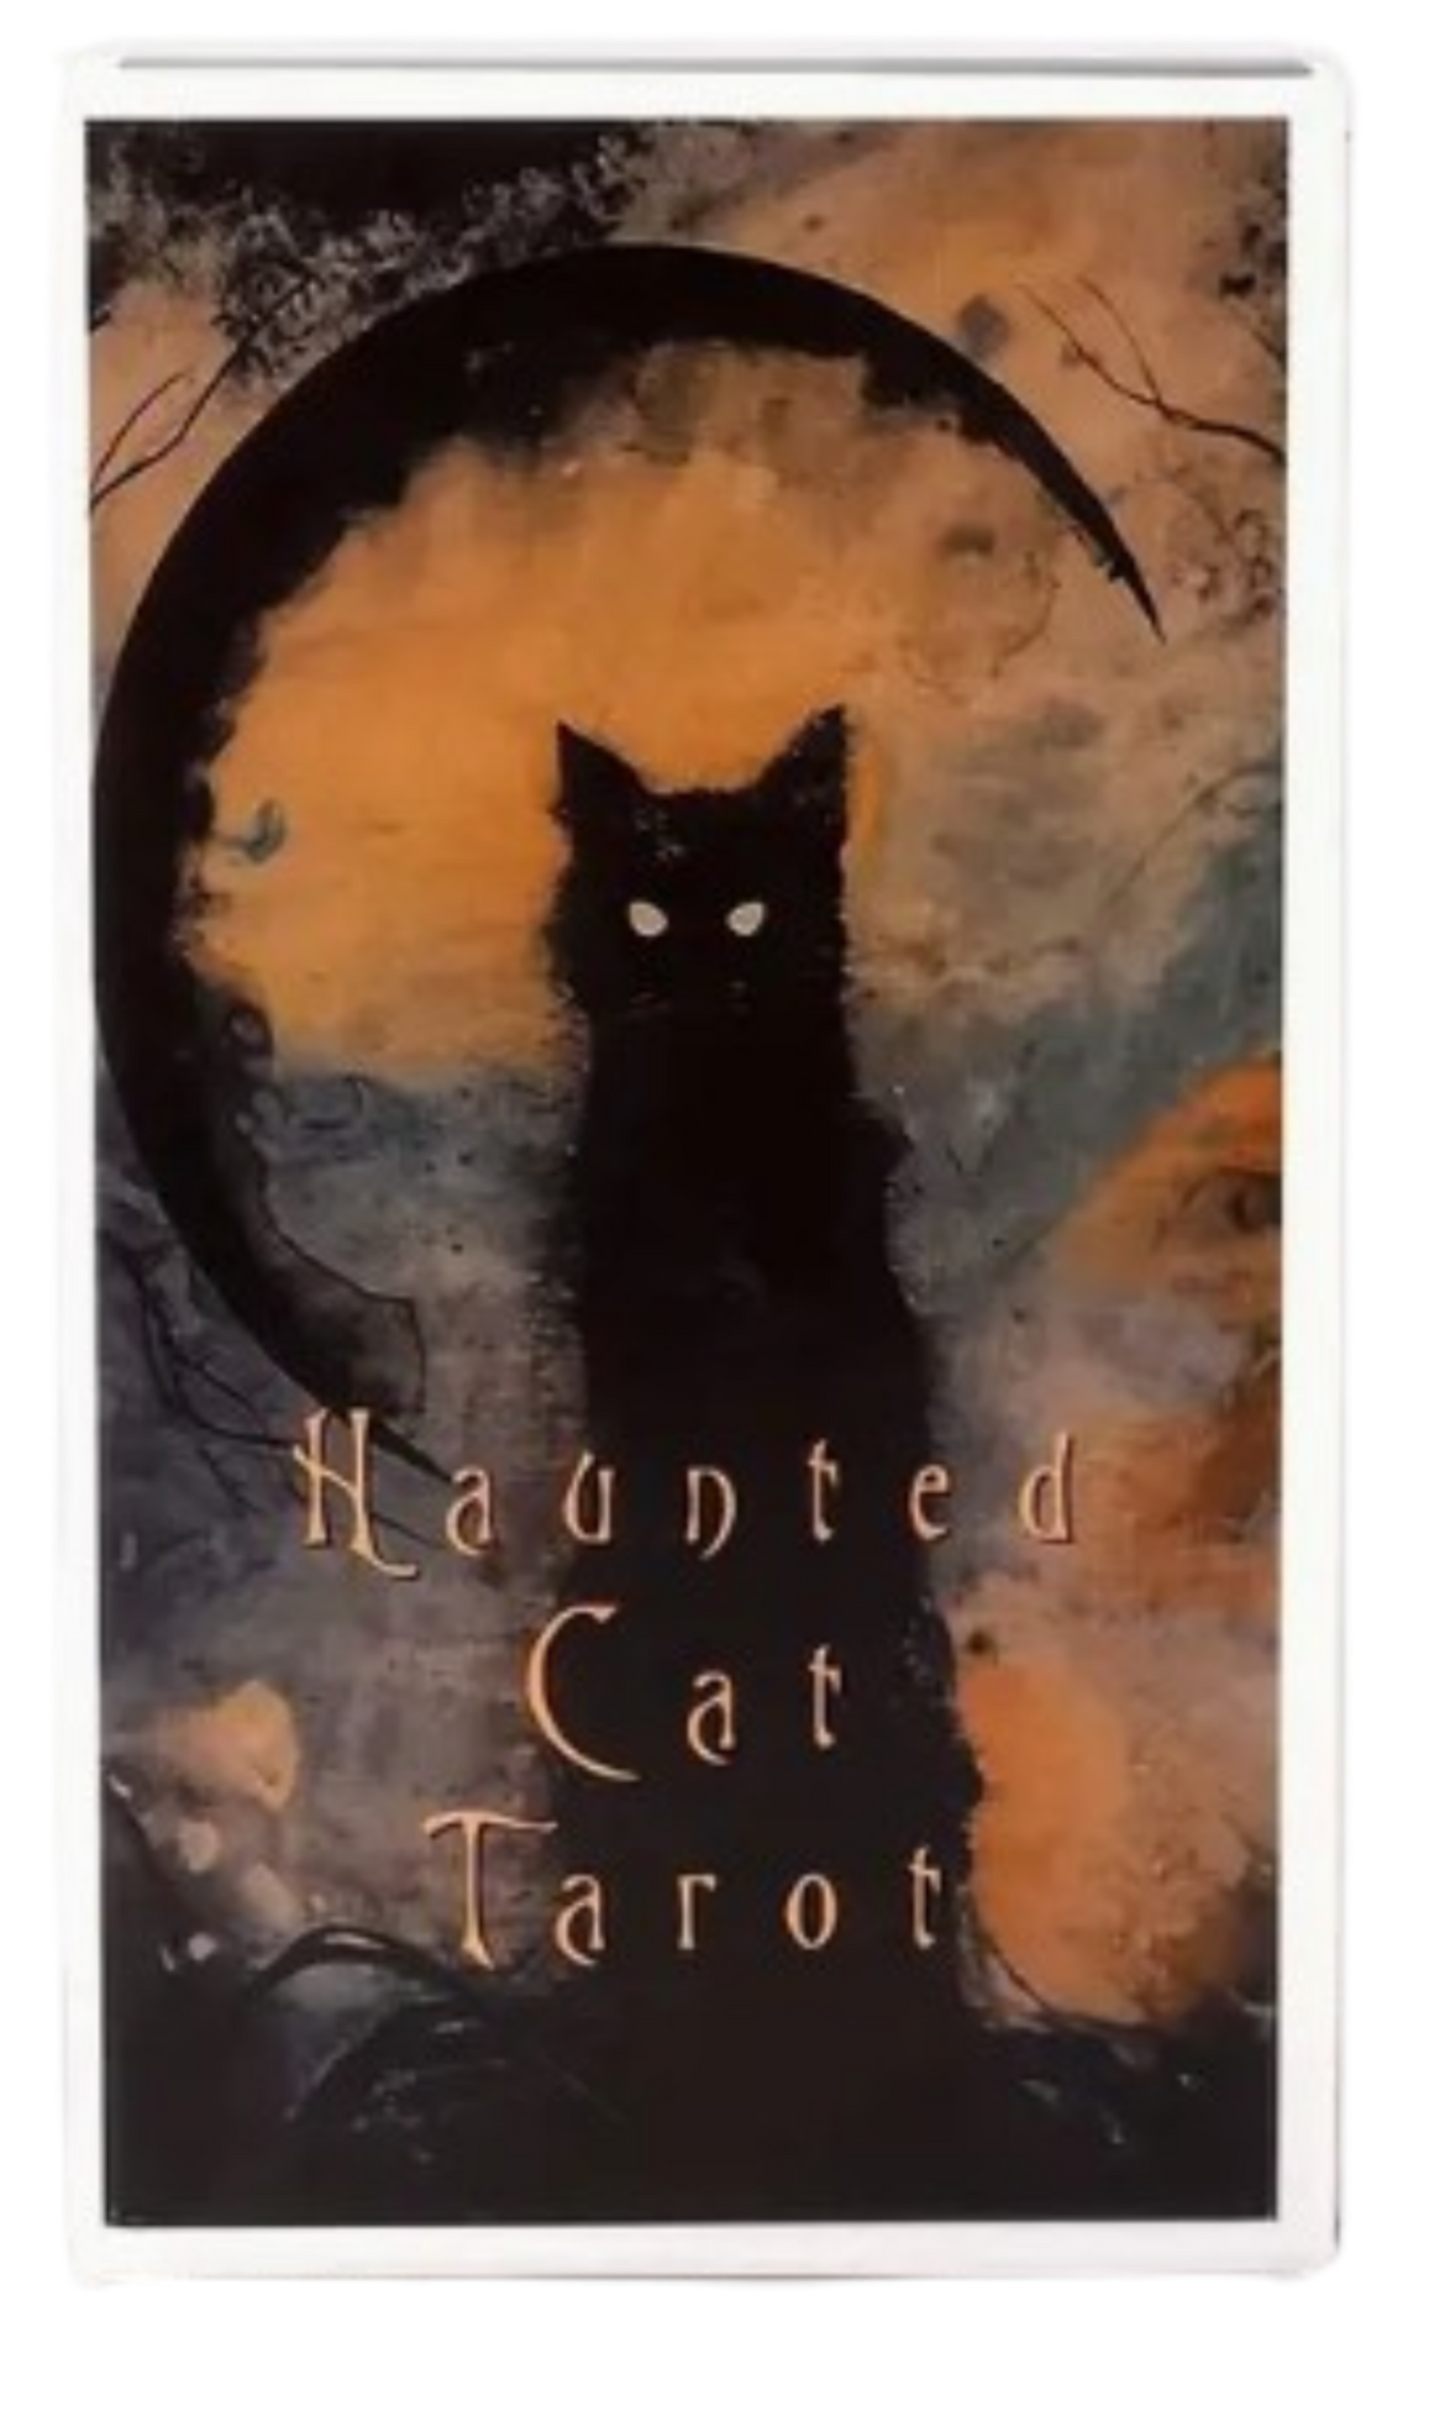 Haunted Cat Tarot